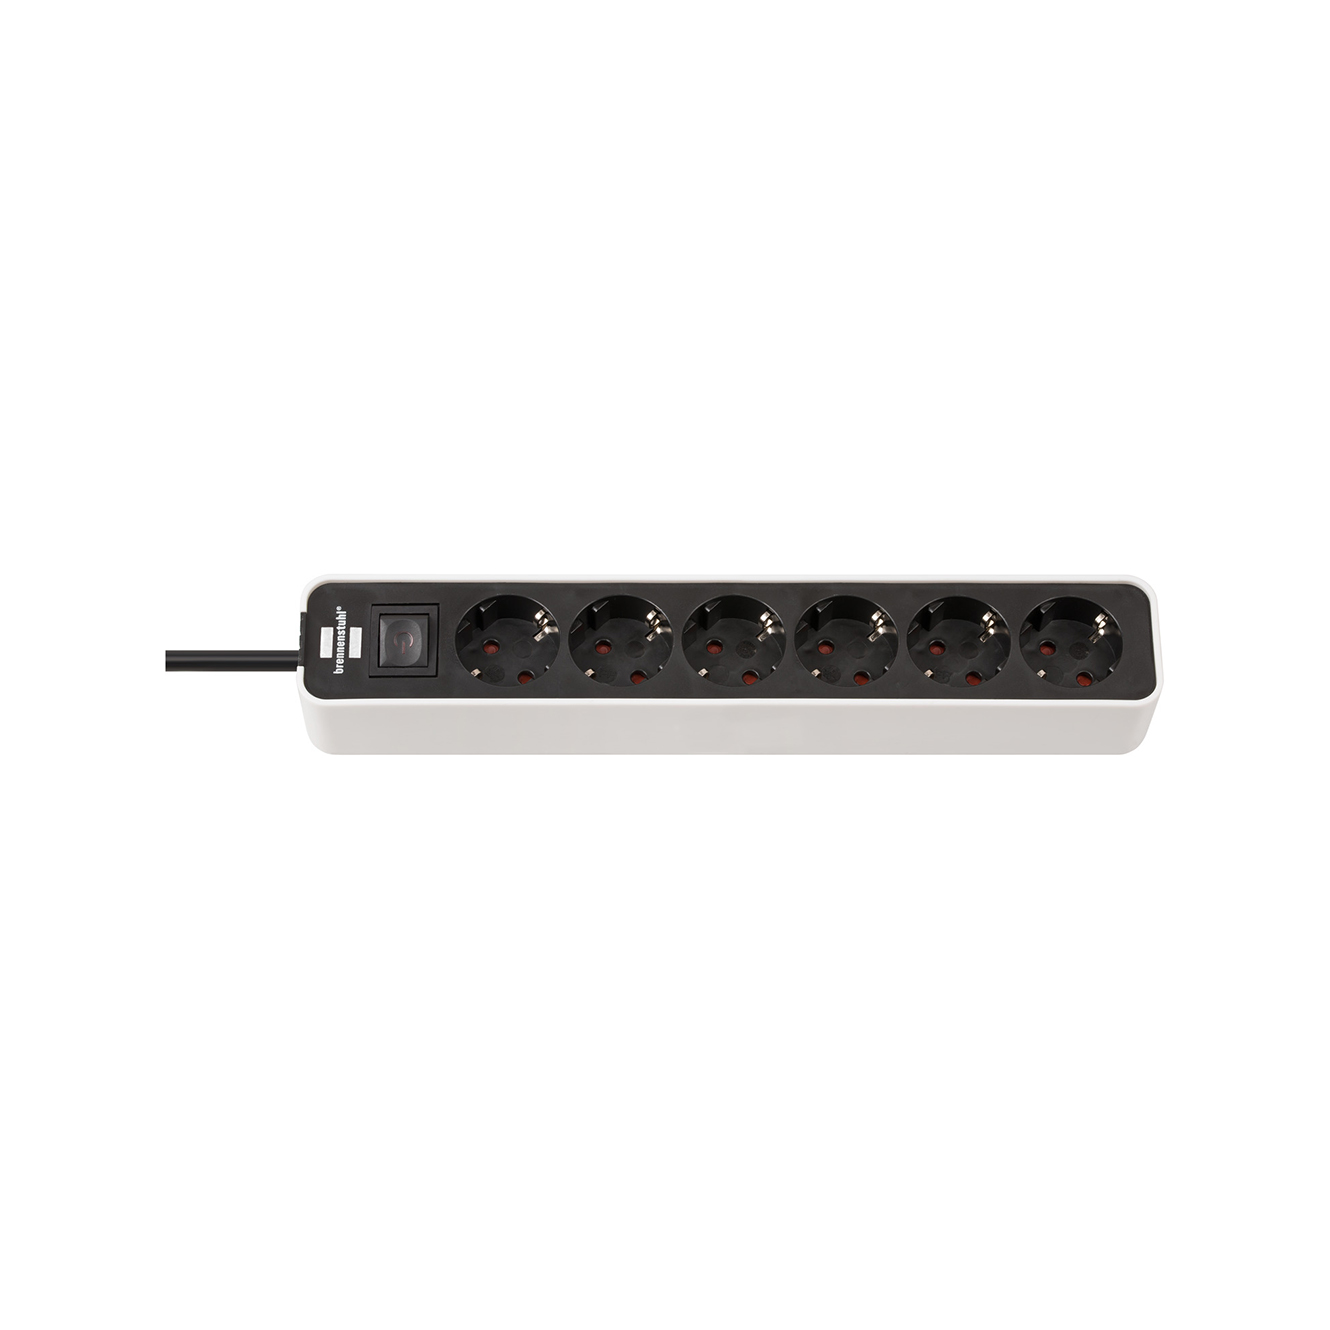 Удлинитель Brennenstuhl Ecolor с переключателем 6 розеток кабель 1,5 м H05VV-F 3G1,5 черно-белый 1153260020